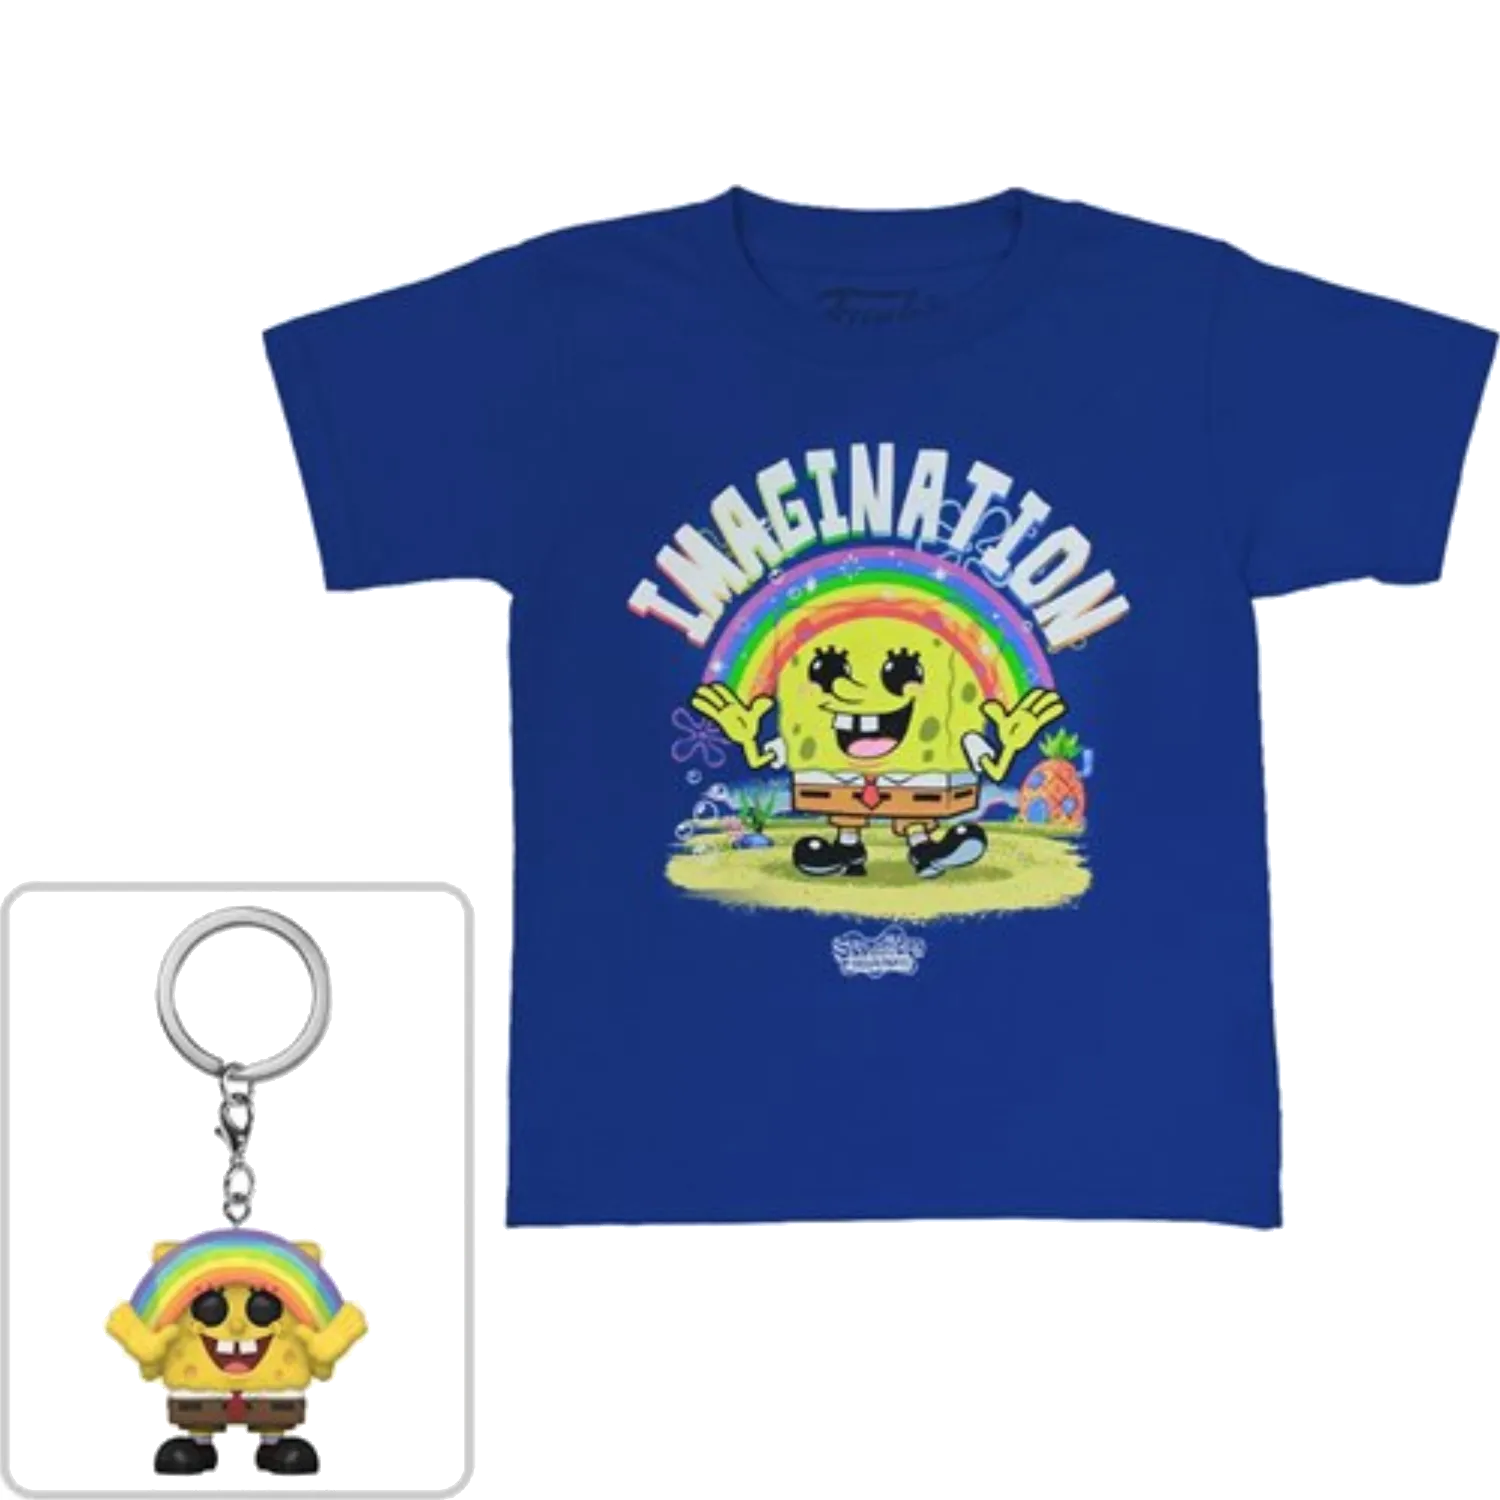 Maglietta e portachiavi Imagination Funko di SpongeBob